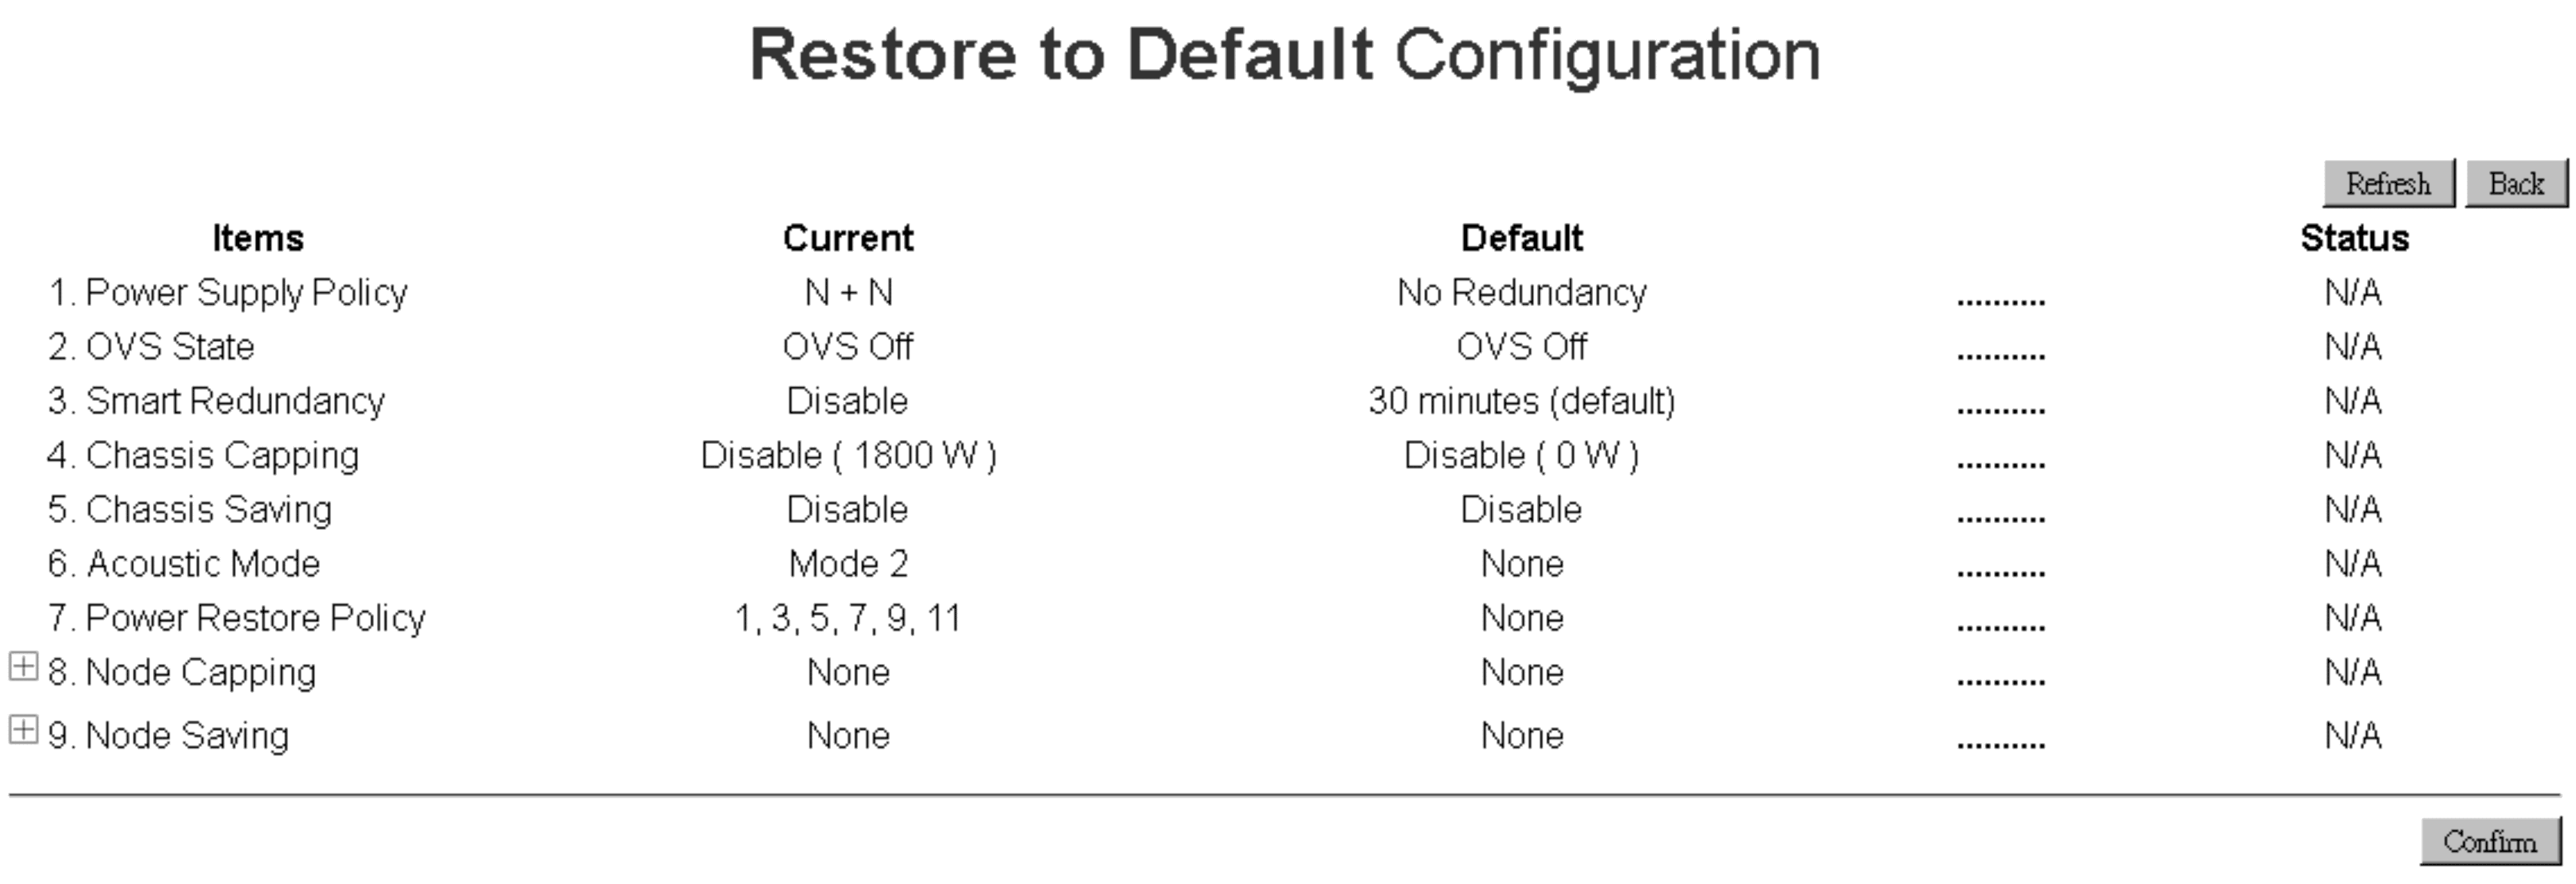 FPC Restore to Default Configuration